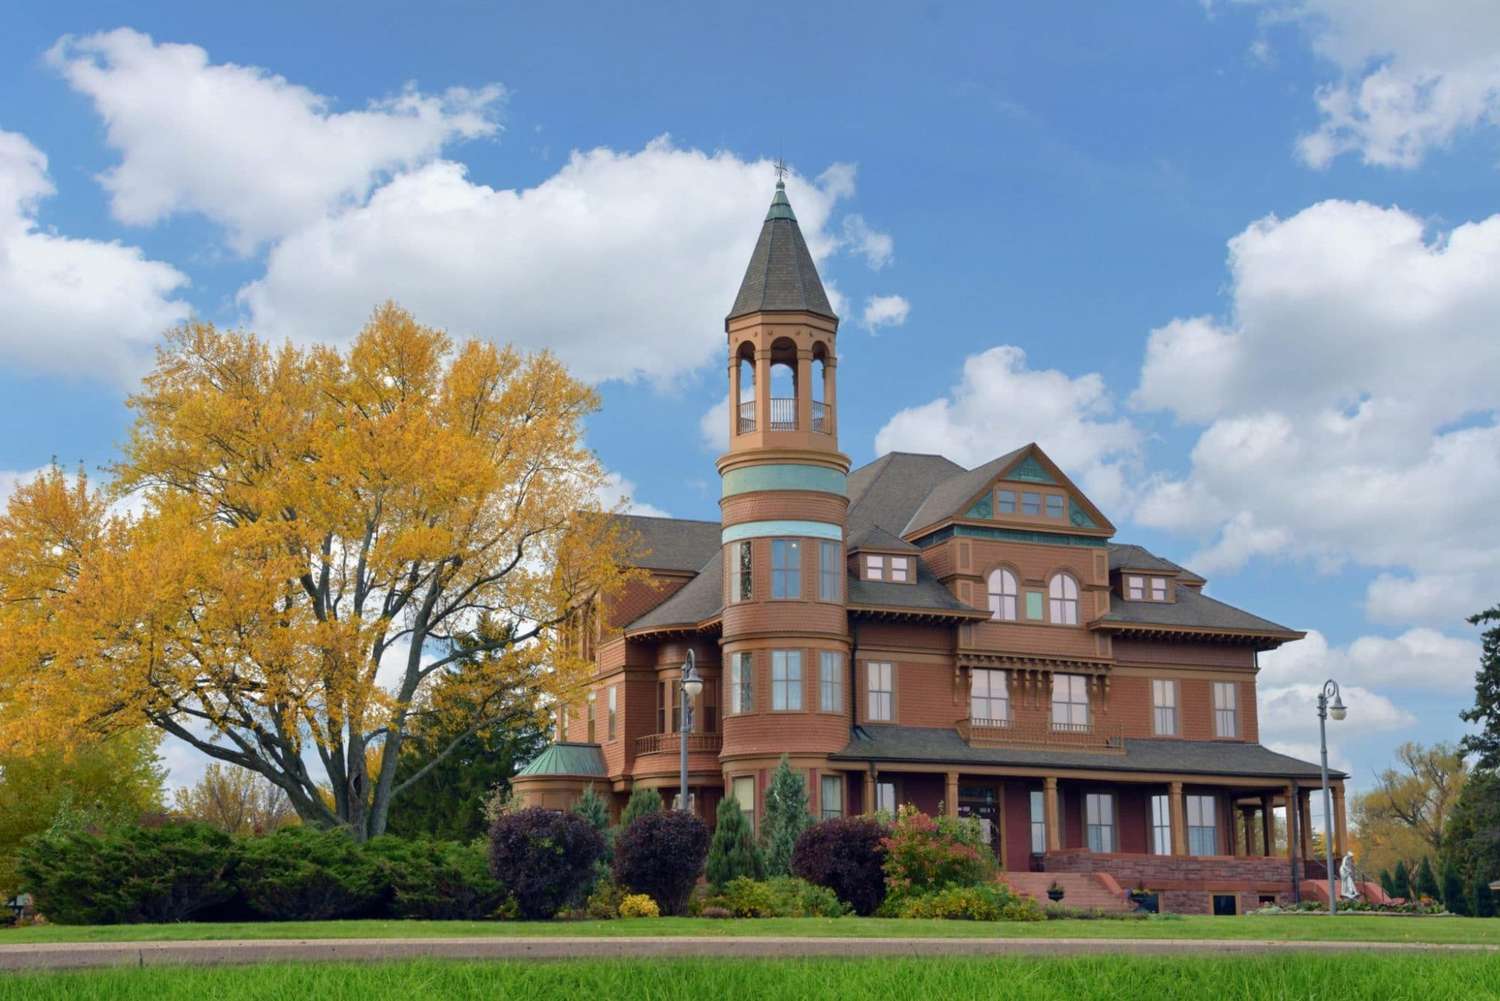 Fairlawn Mansion in Superior, Wisconsin